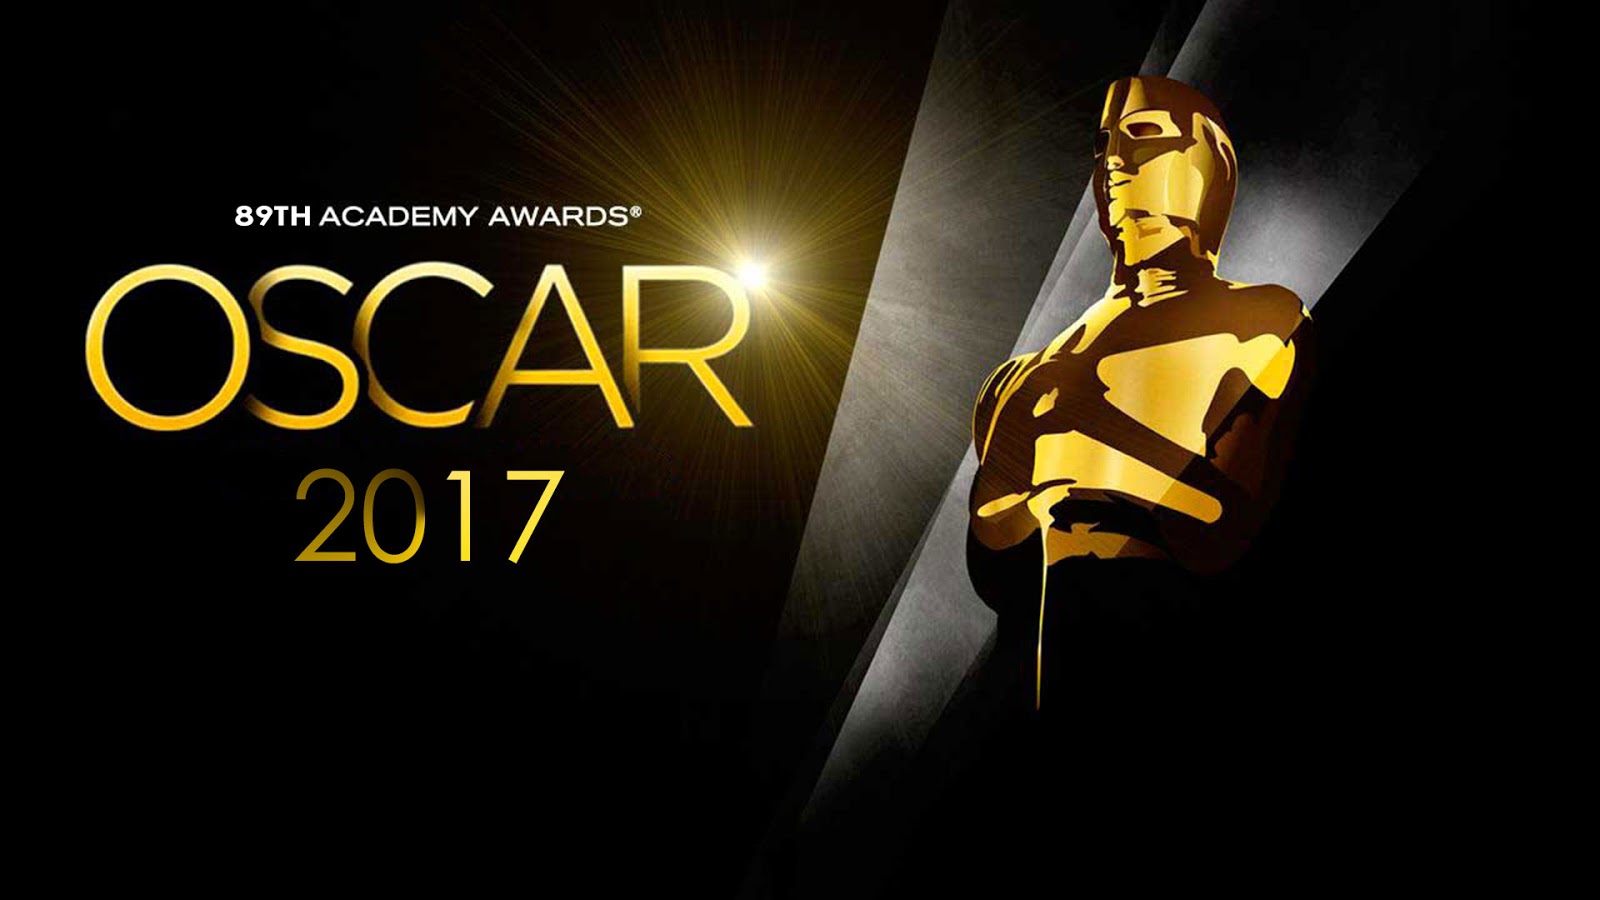 The Oscars Banner